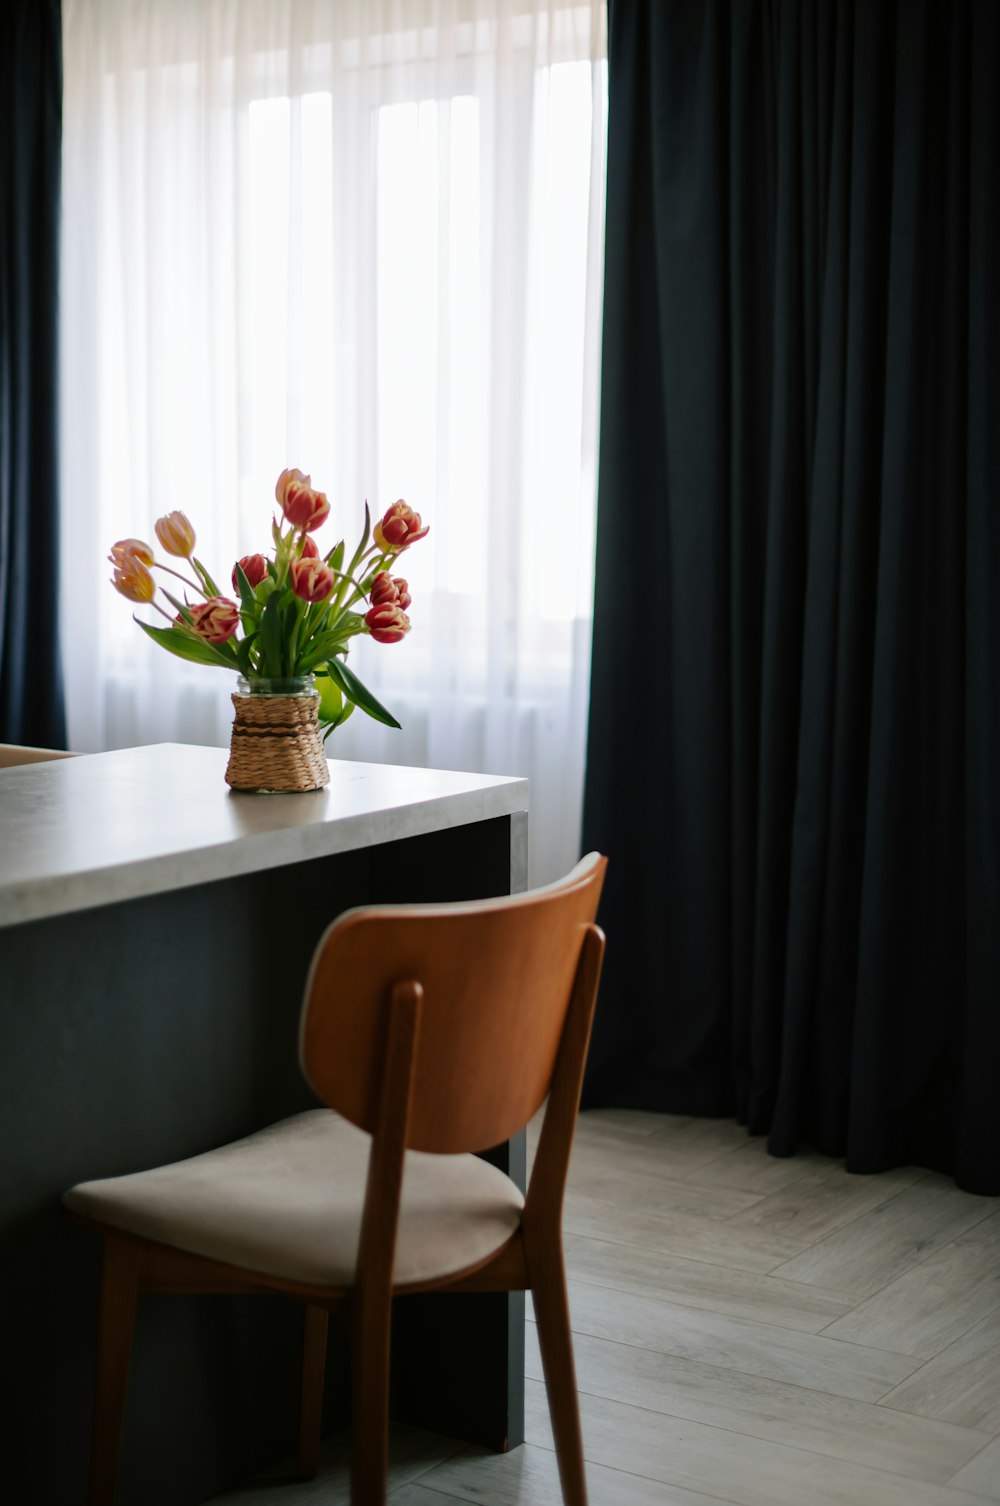 Un vaso di tulipani si trova su un bancone accanto a una sedia